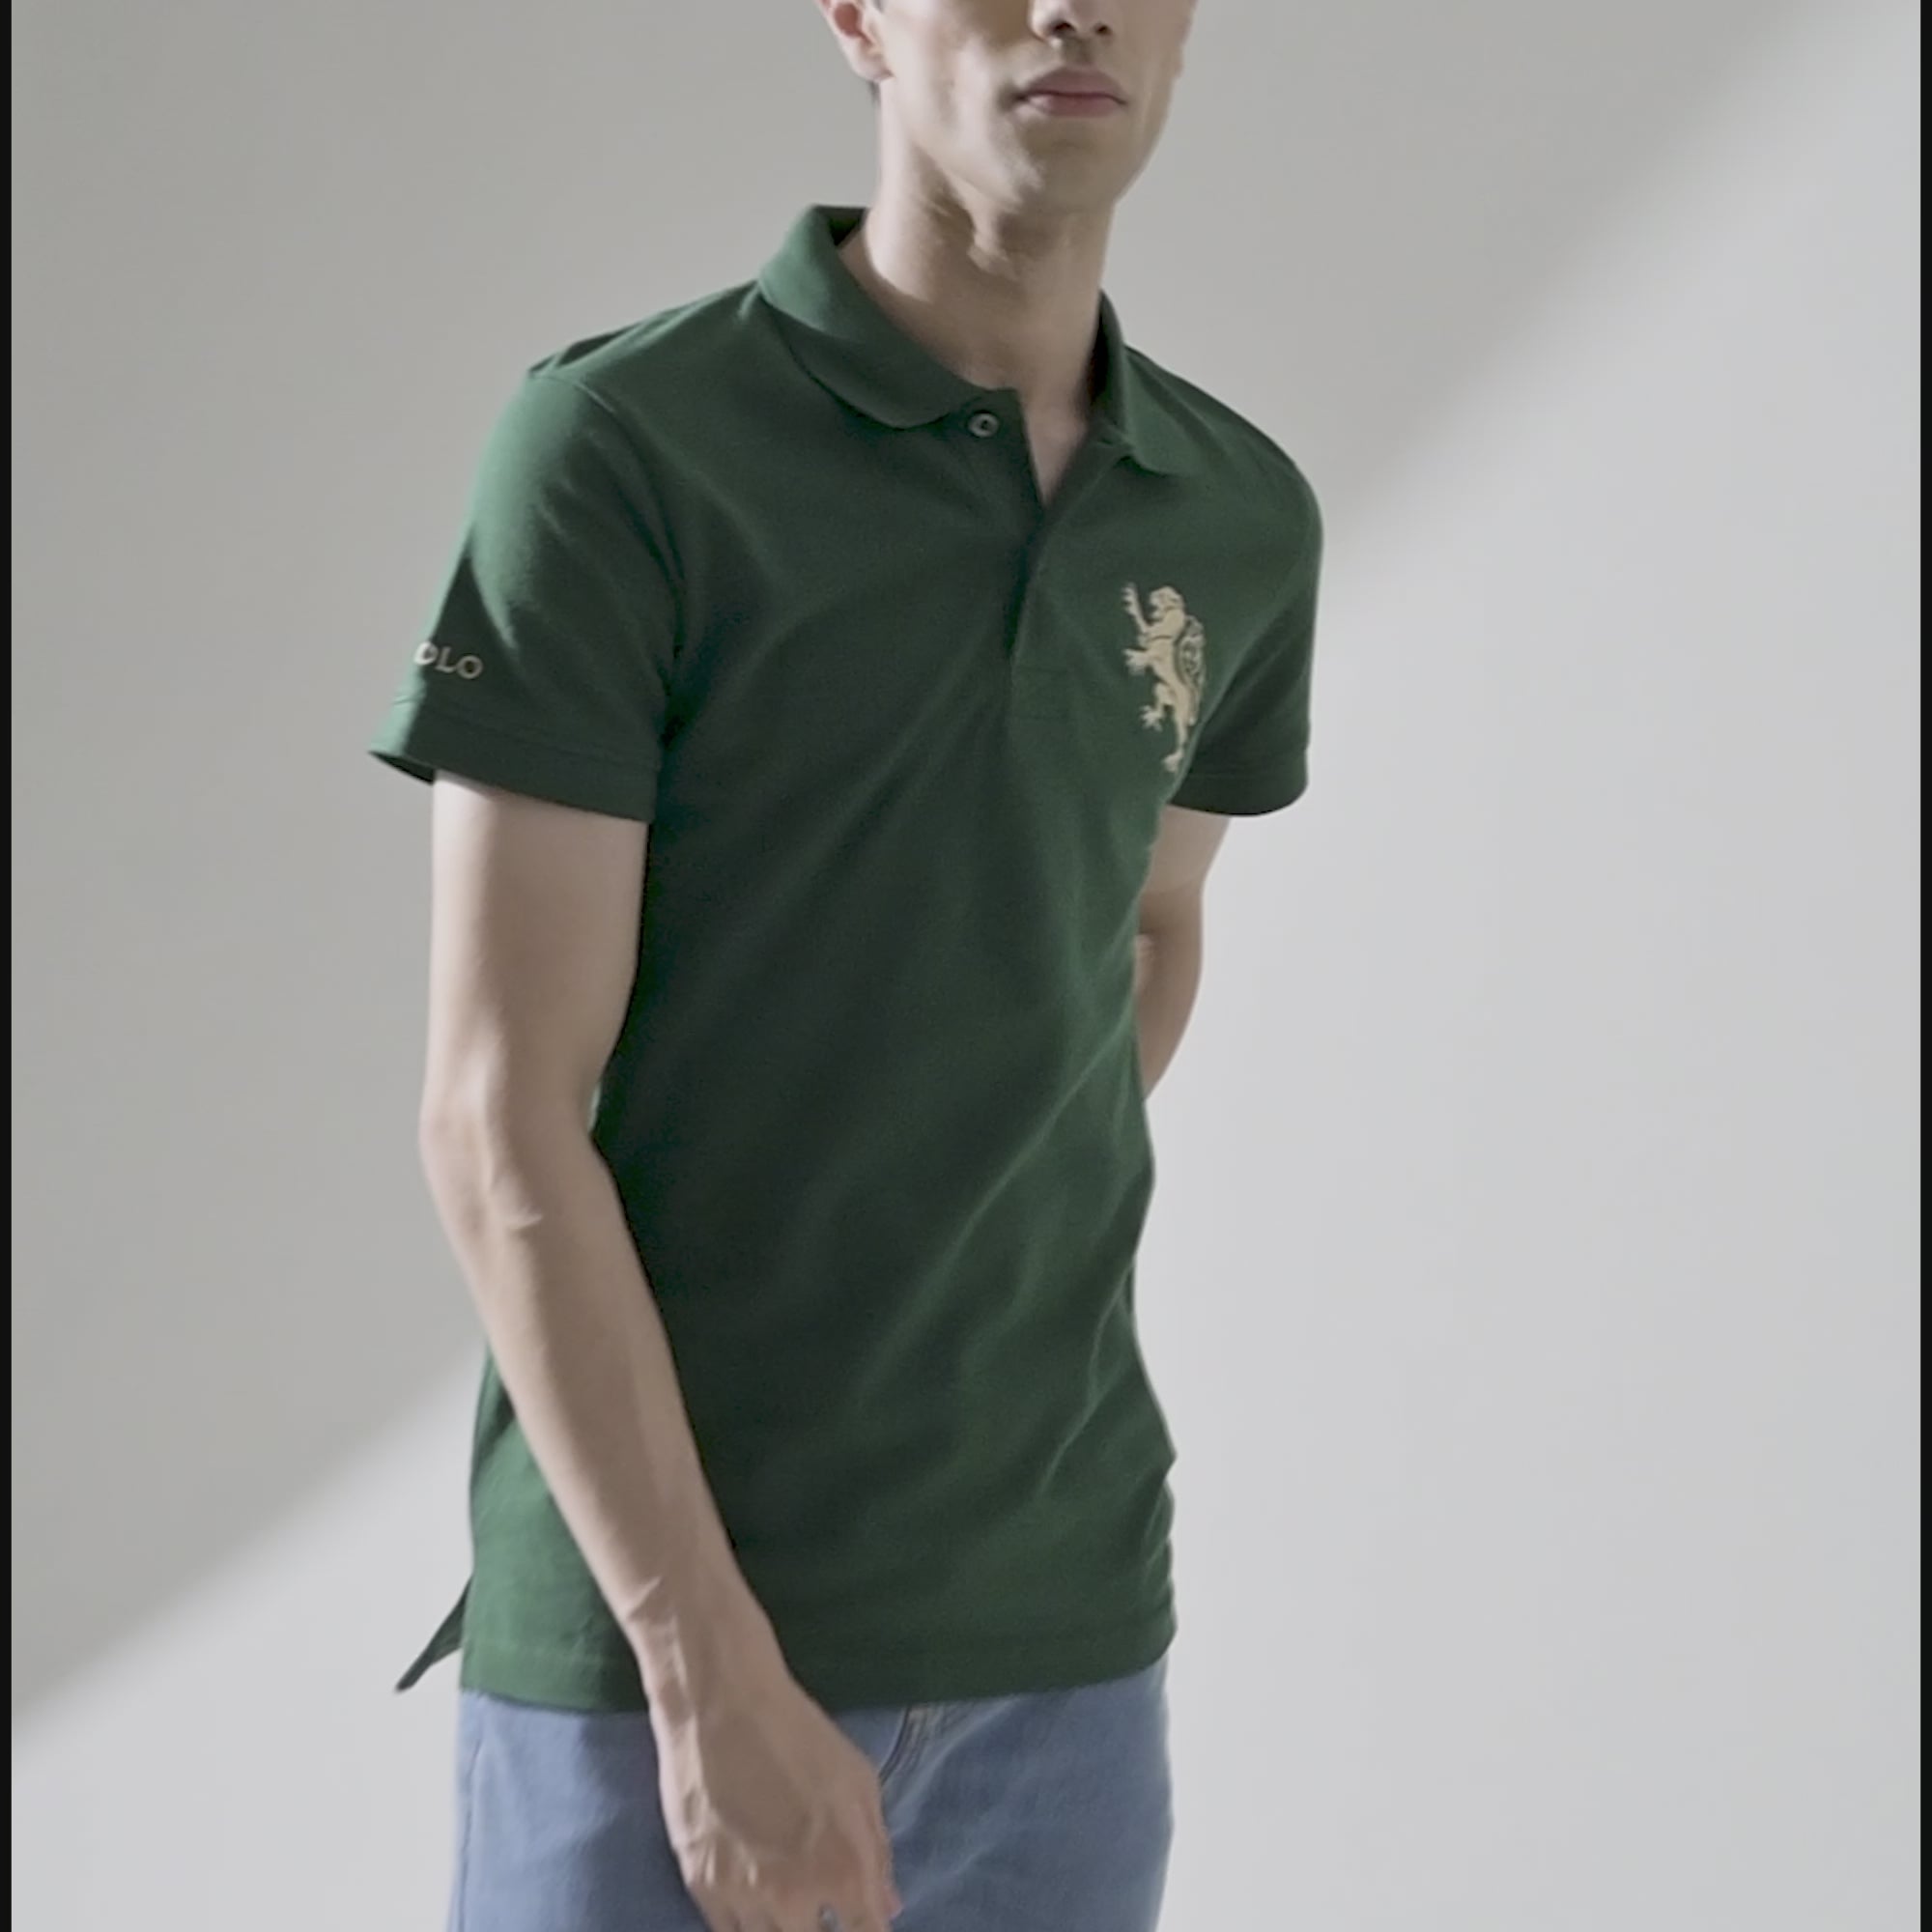 Polo Republica Men's Regal Lion Embroidered Short Sleeve Polo Shirt Green